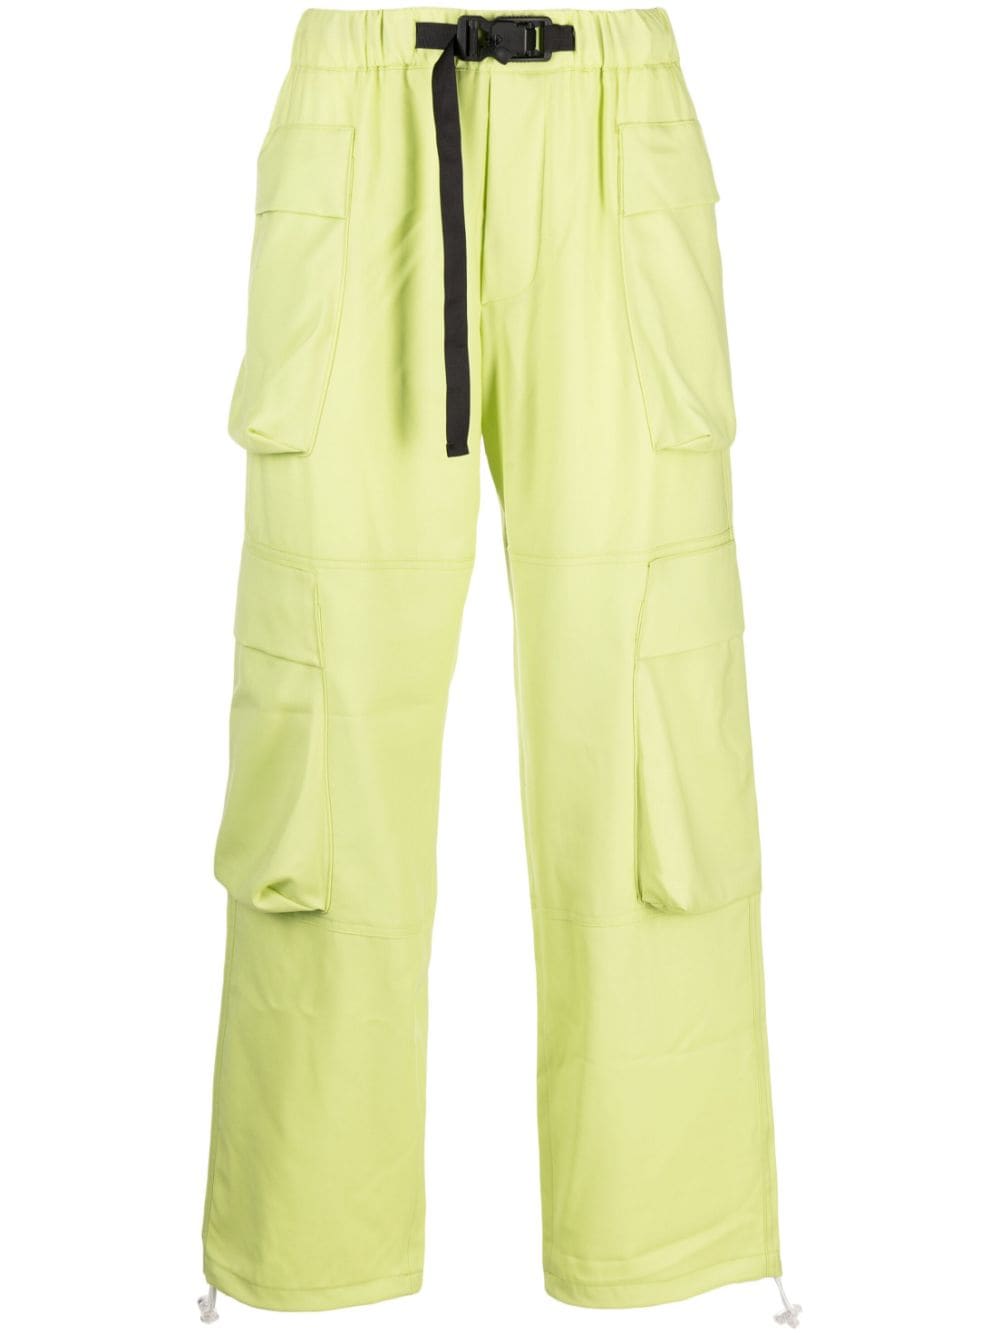 Pantalone cargo verde acido